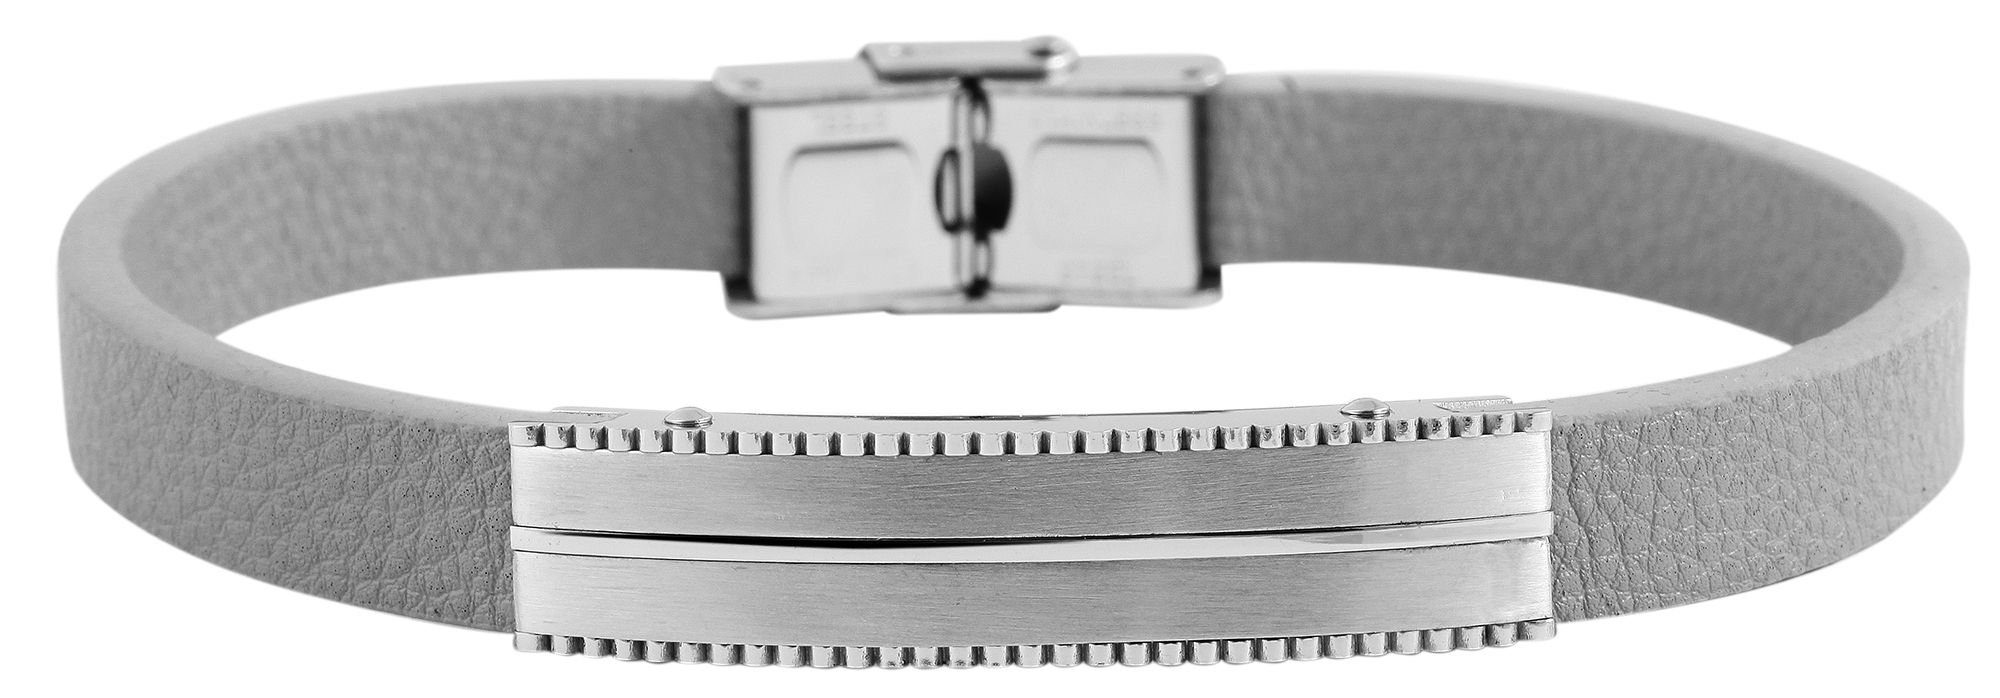 AKZENT Lederarmband Eddin Unisex Armband aus Echtleder mit Edelstahlelement Grau (einzeln)